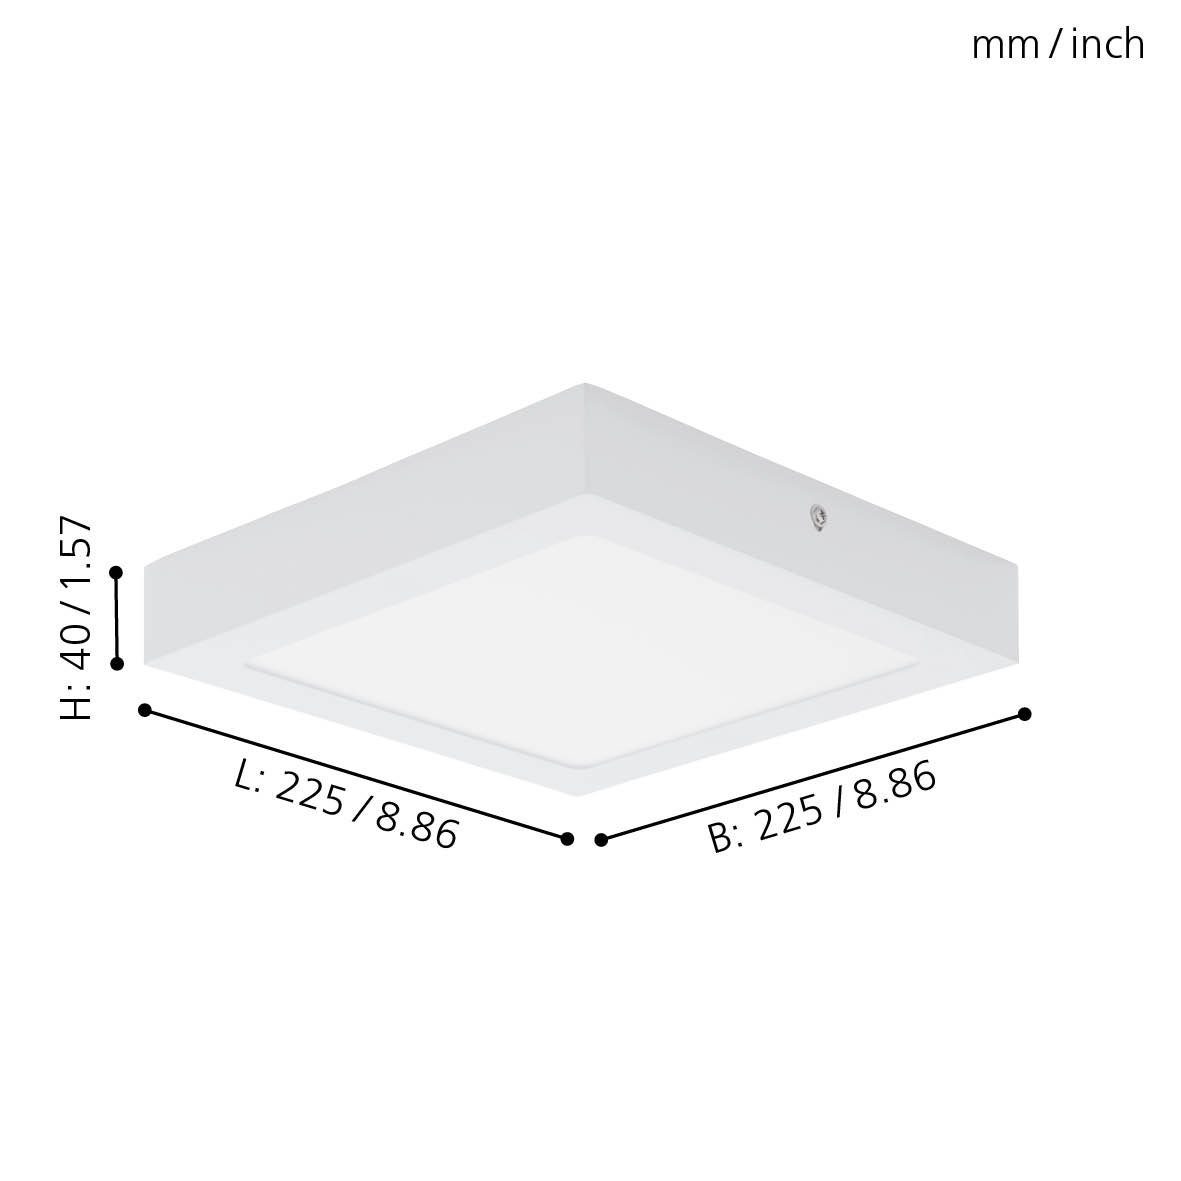 EGLO Aufbauleuchte Fueva inklusive, Lampe Deckenlampe Deckenleuchte, 22.5 cm, Leuchtmittel warmweiß, 1, weiß